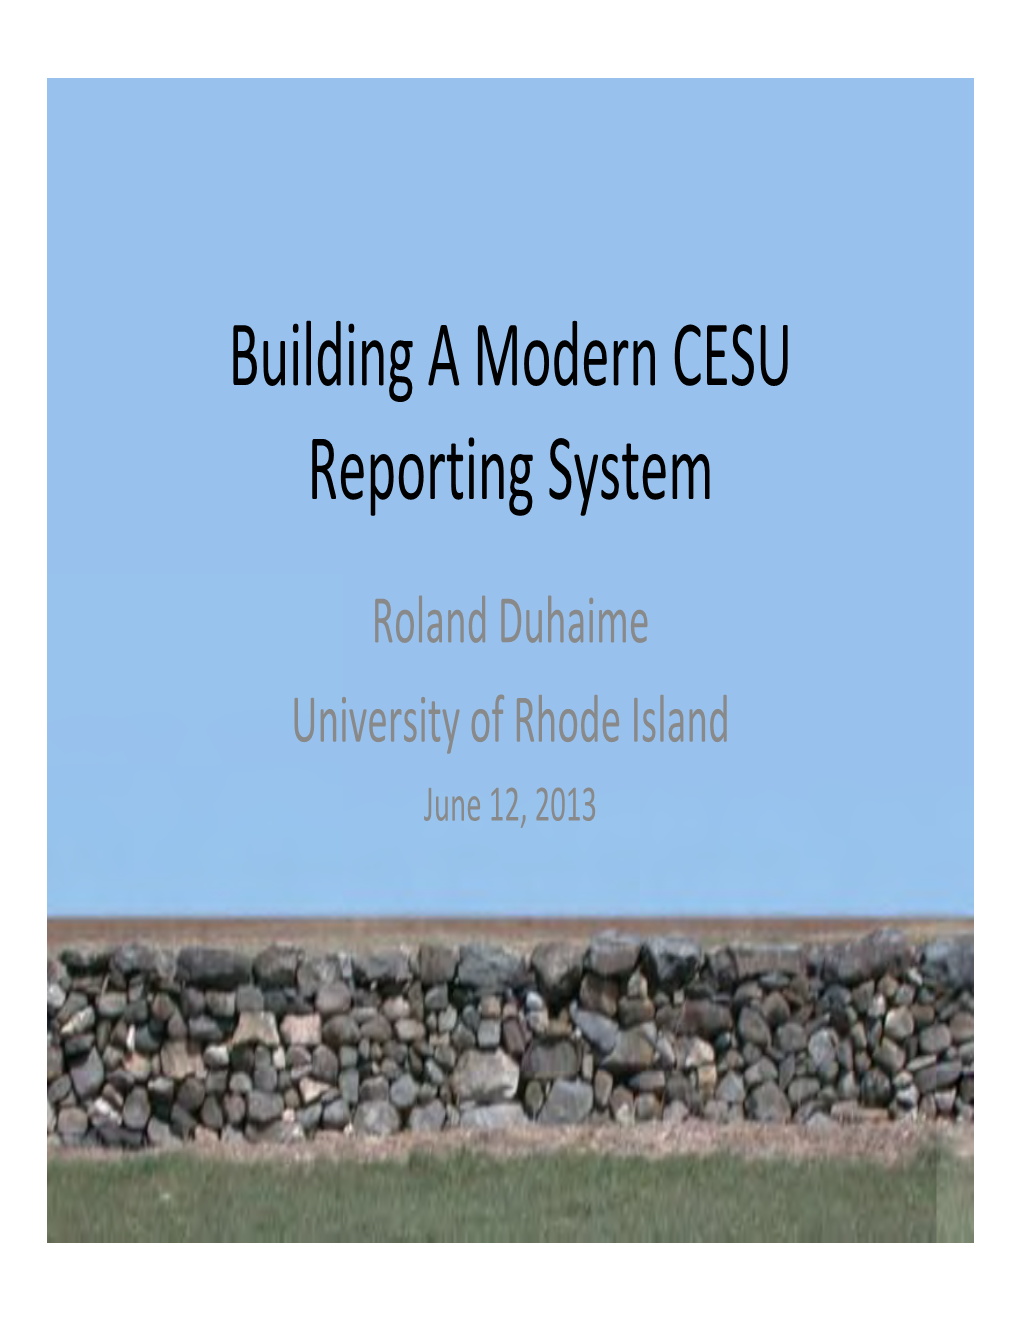 Roland Duhaime: Building a Modern CESU Reporting System